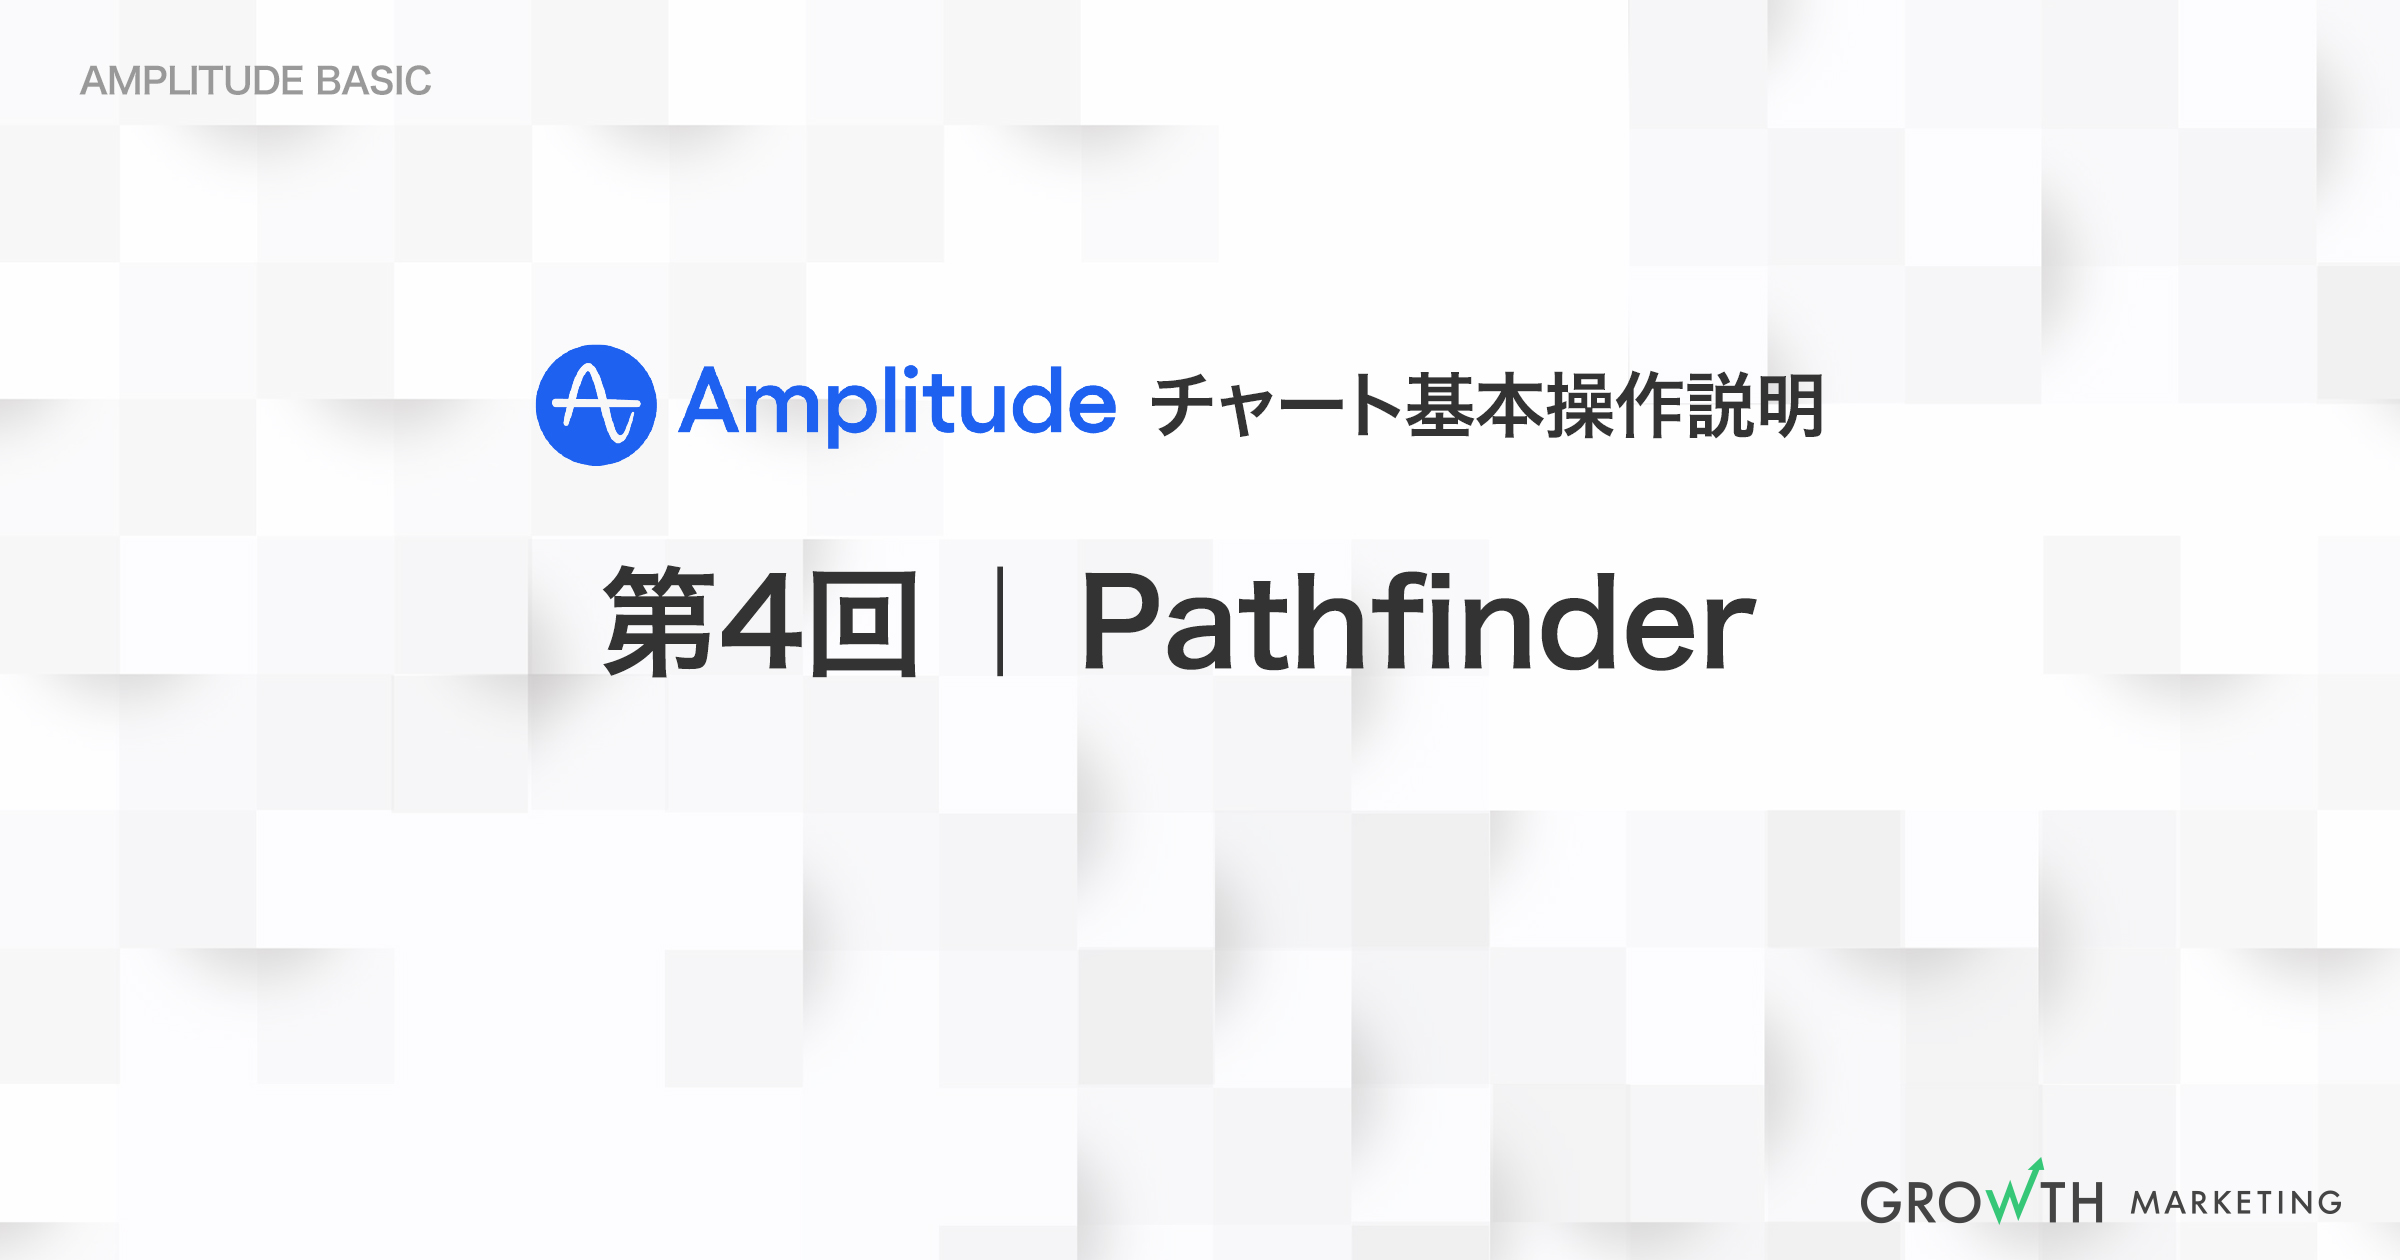 指定された時間内にユーザーがプロダクト内で行うイベントを測定｜第4回 Pathfinder